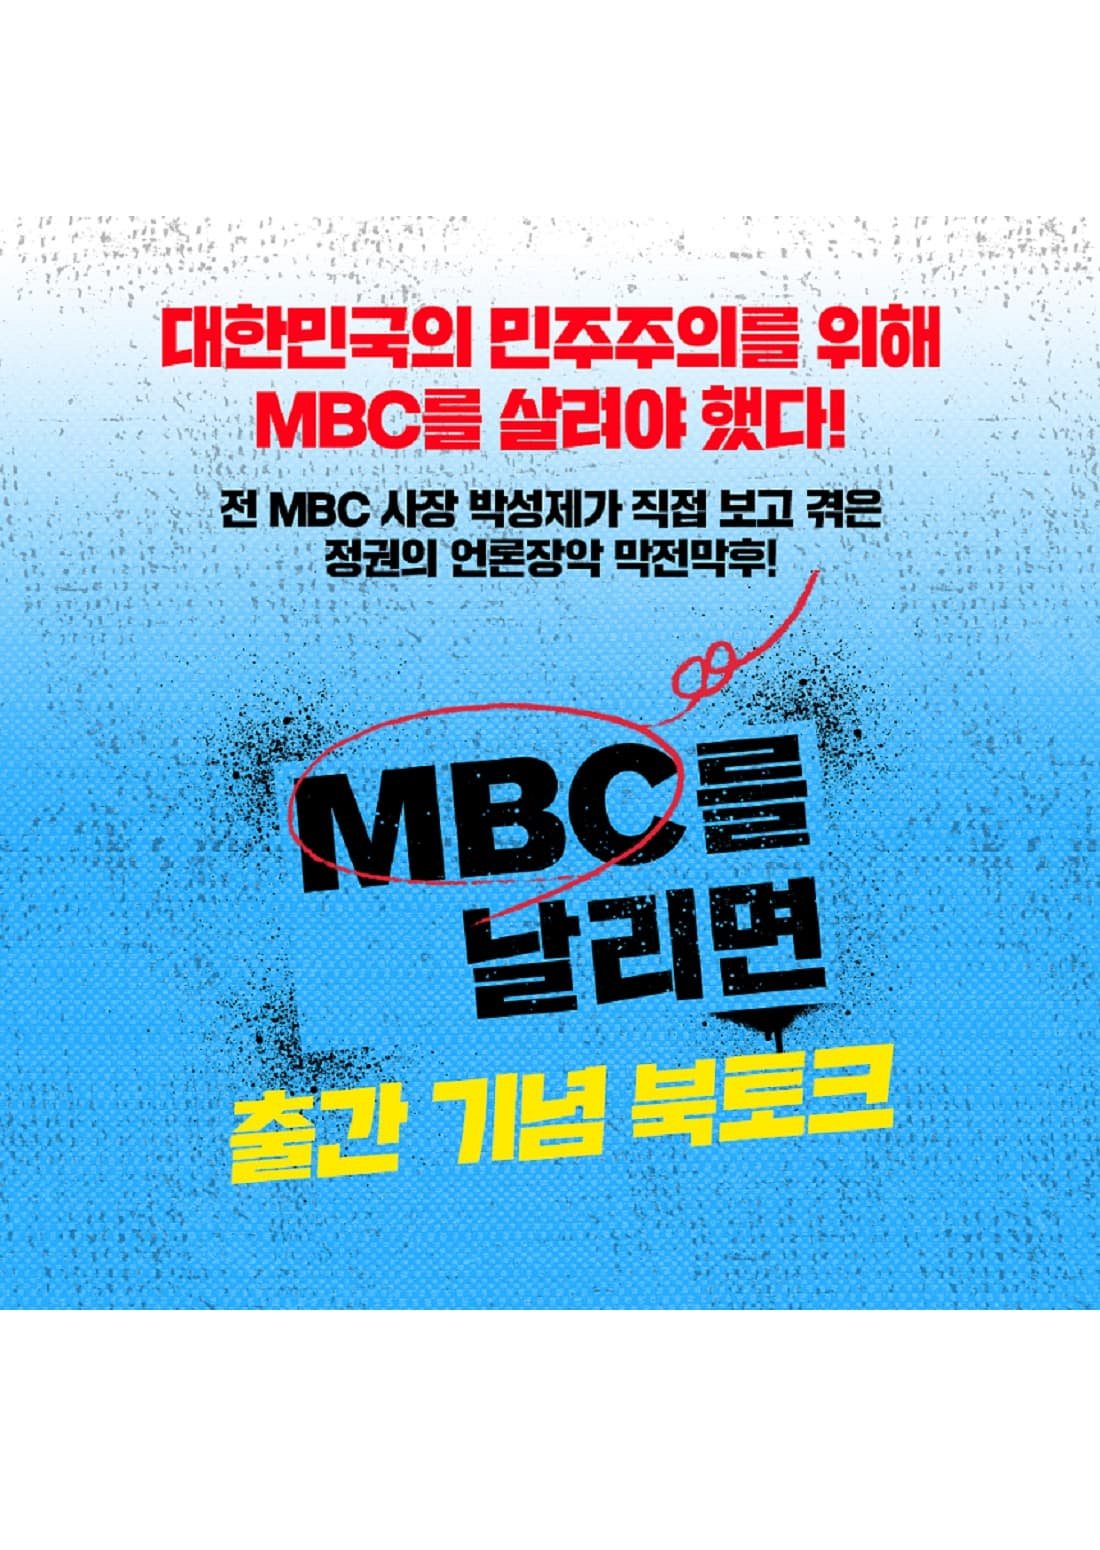 『MBC를 날리면』 출간 기념 북토크에 후원회원님을 초대합니다